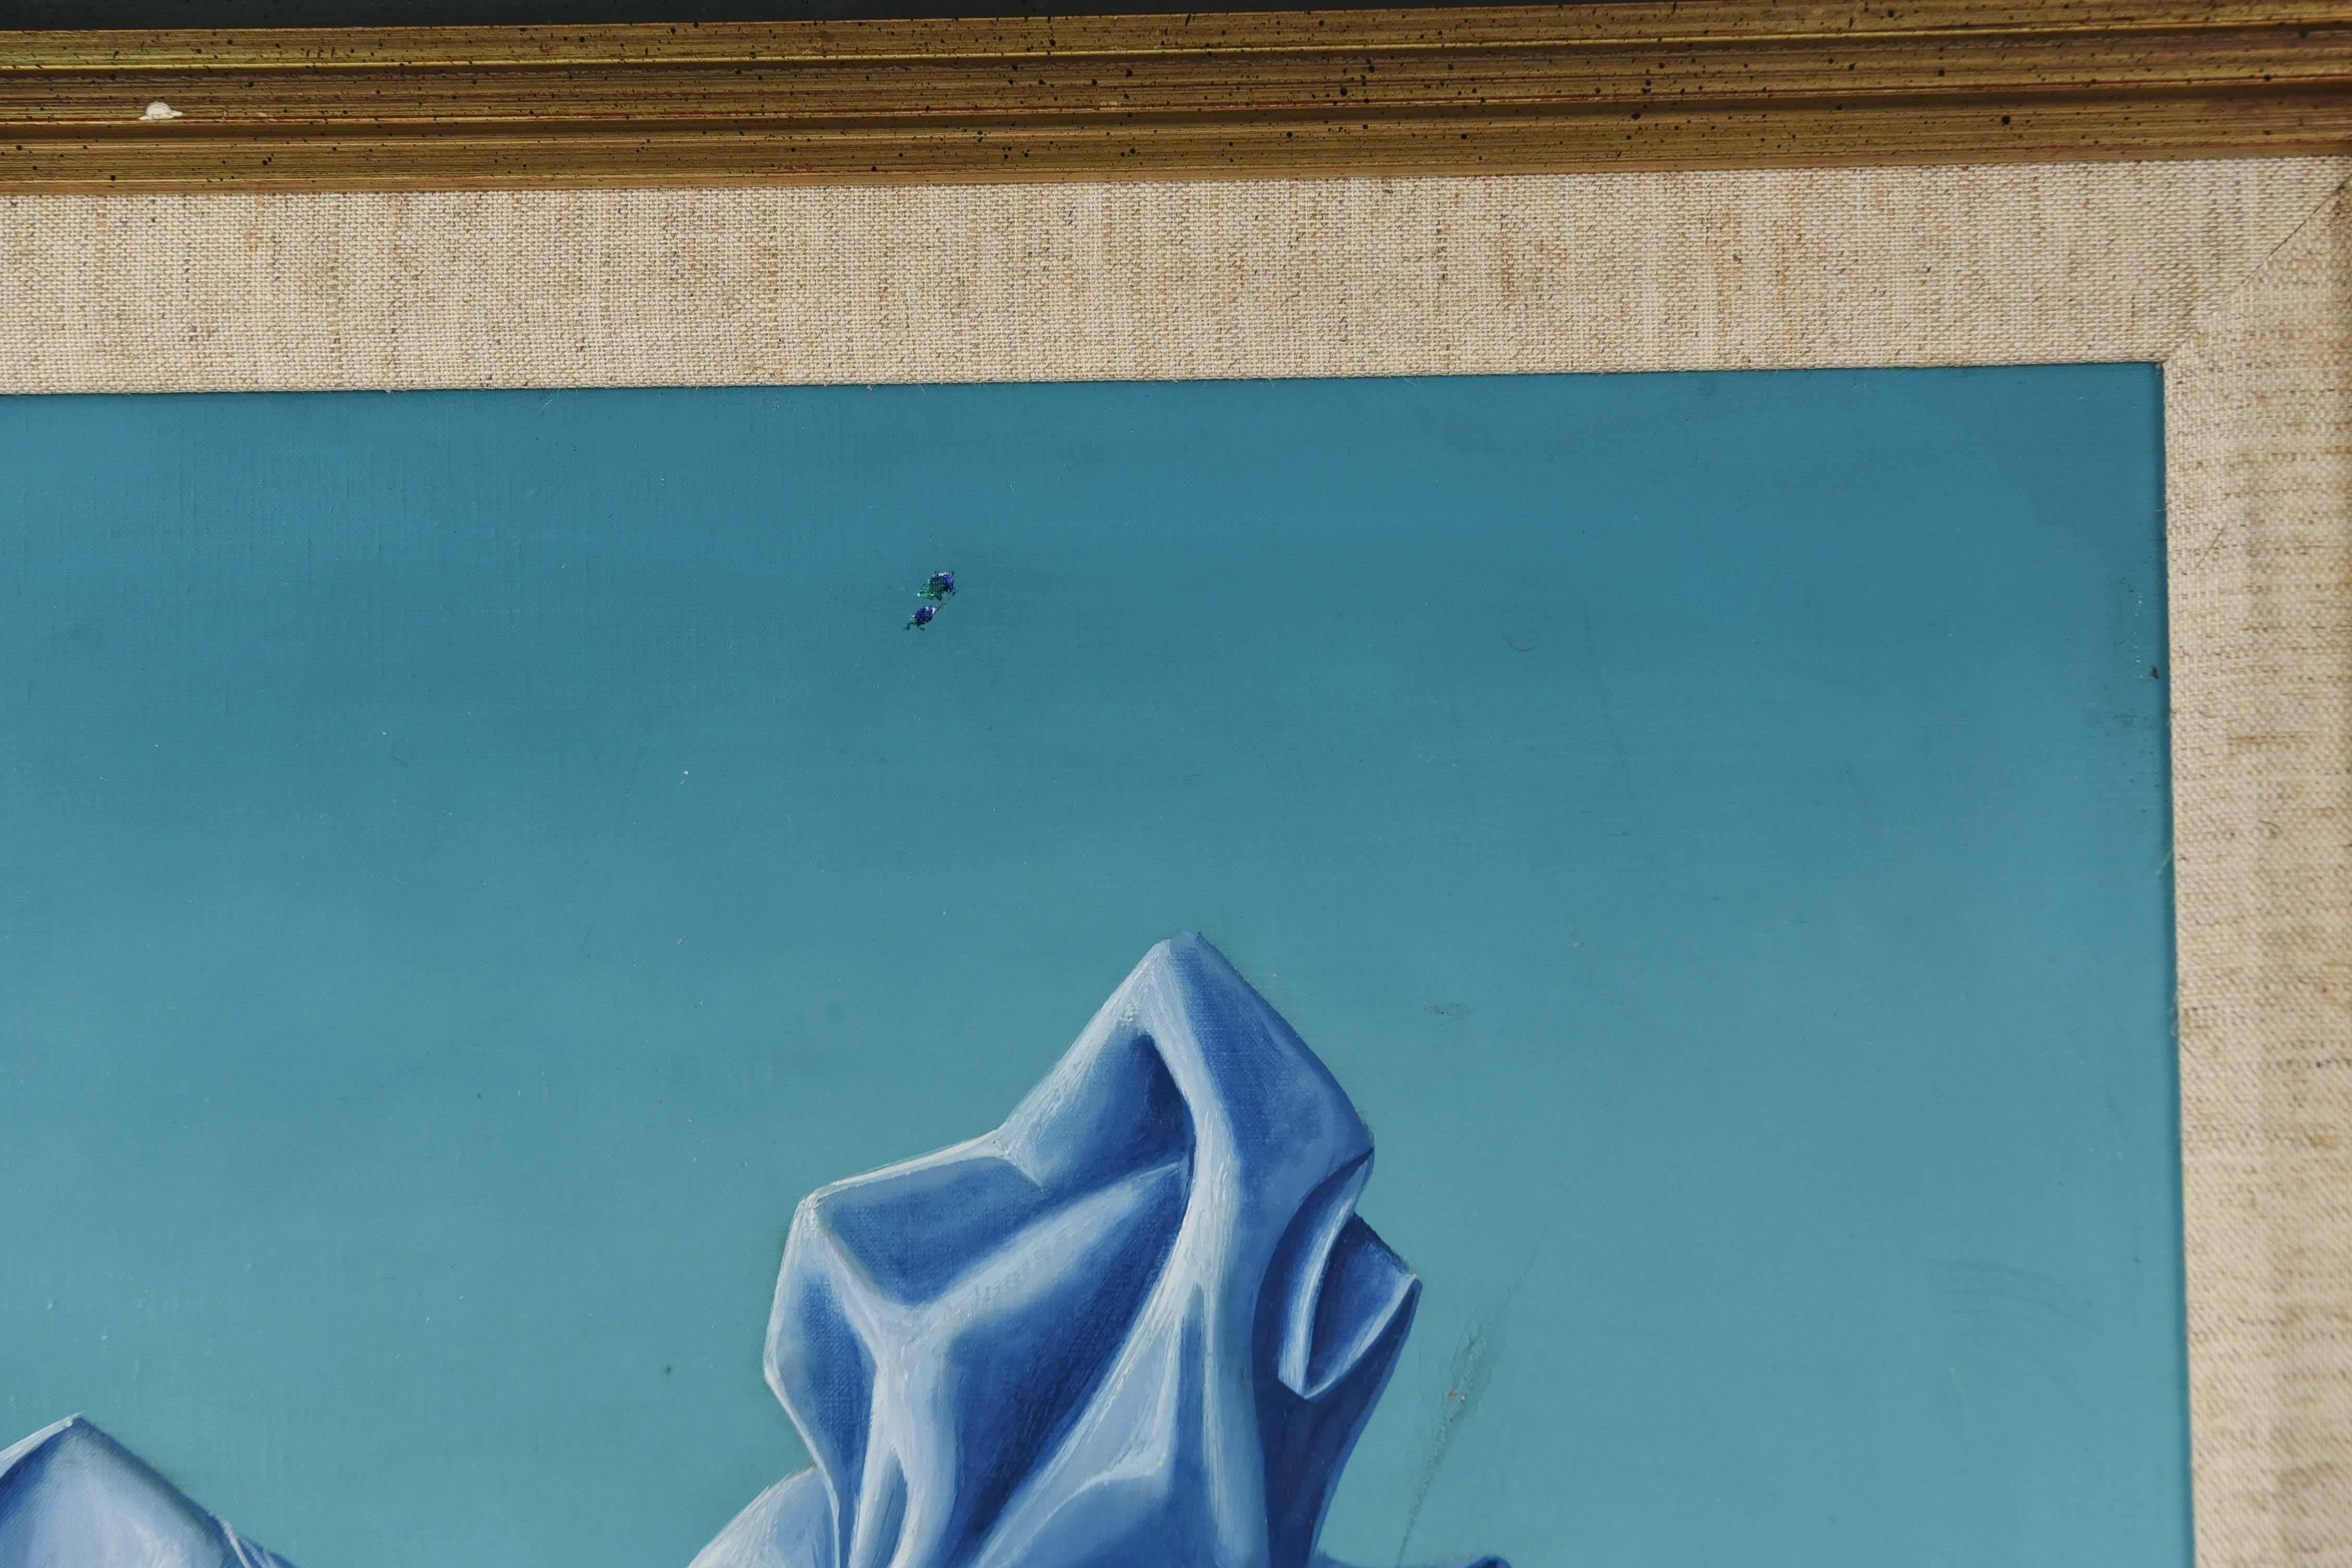 Cette œuvre surréaliste de l'artiste français classé Jean Pierre Clément représente le portrait d'une femme avec une coiffe géométrique bleue et un sein exposé. Au fond, un homme semble jouer de la cornemuse.

Titré 